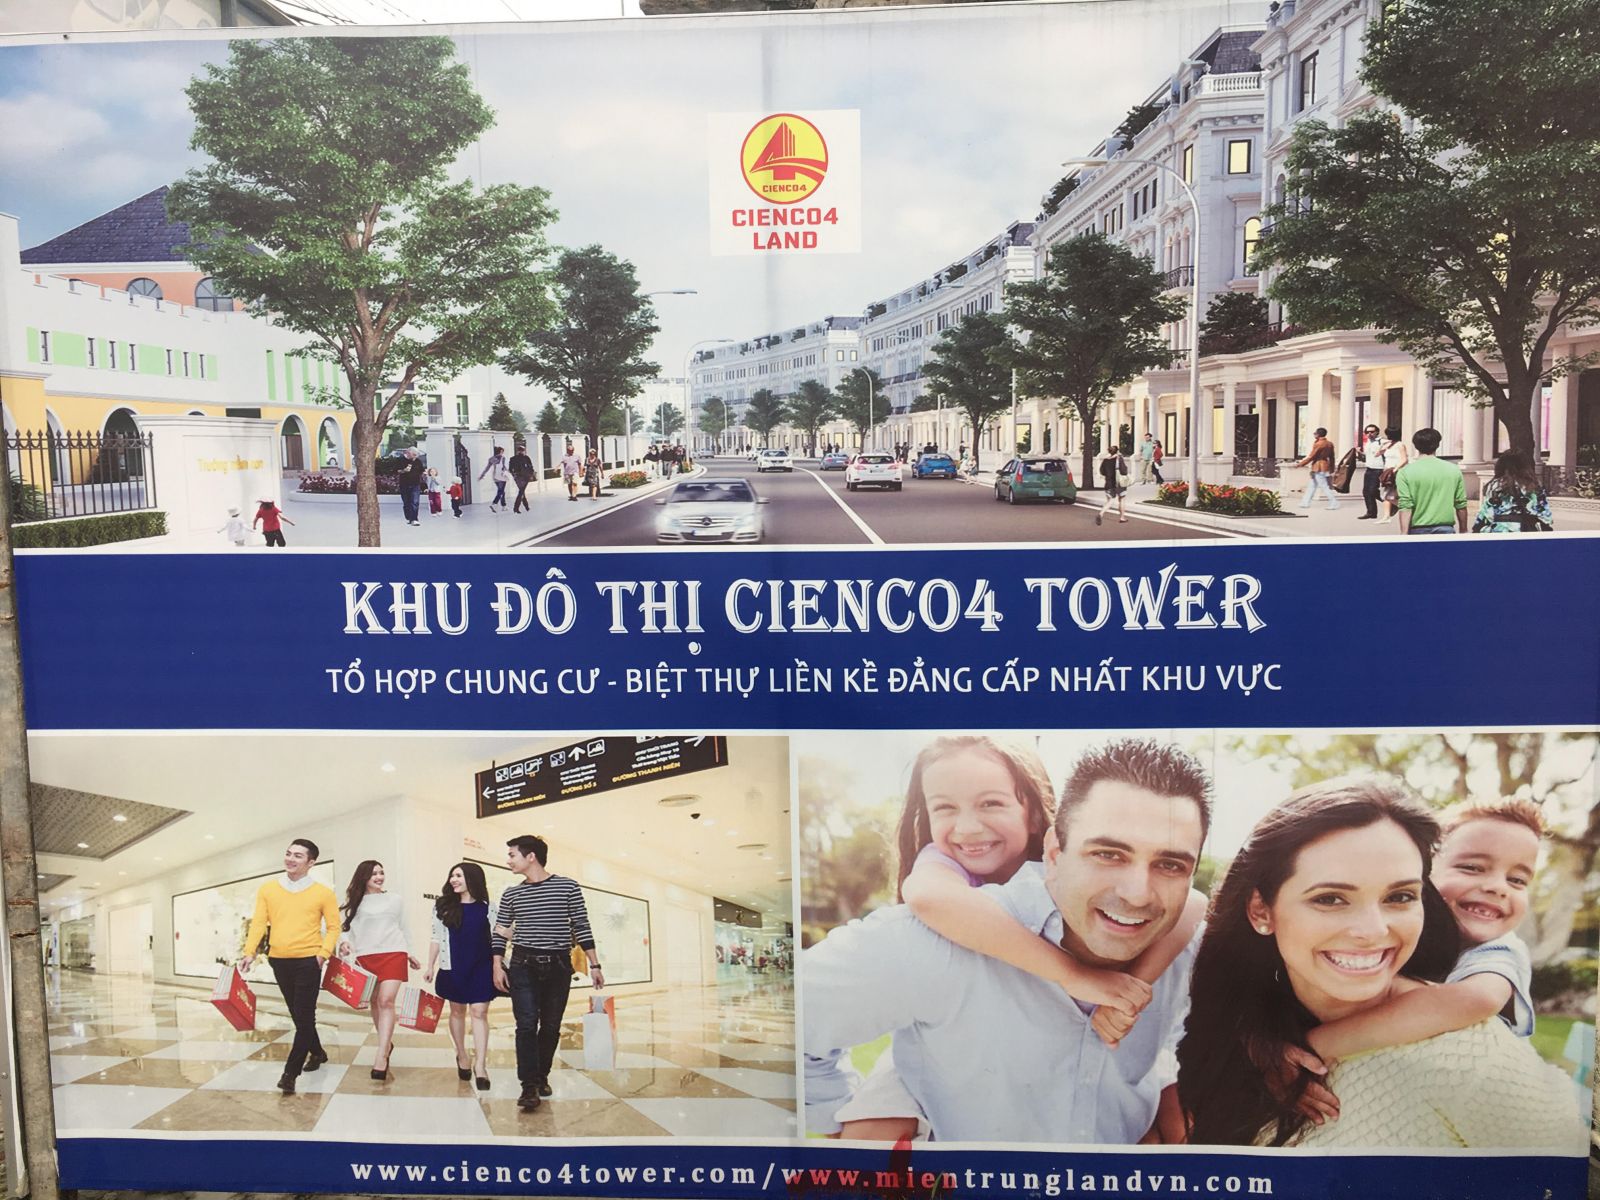 Những tấm pano quảng bá dự án “Khu dịch vụ thương mại, nhà ở và chung cư cao tầng” trông bắt mắt, nhằm thu hút khách hàng dân xứ Nghệ.